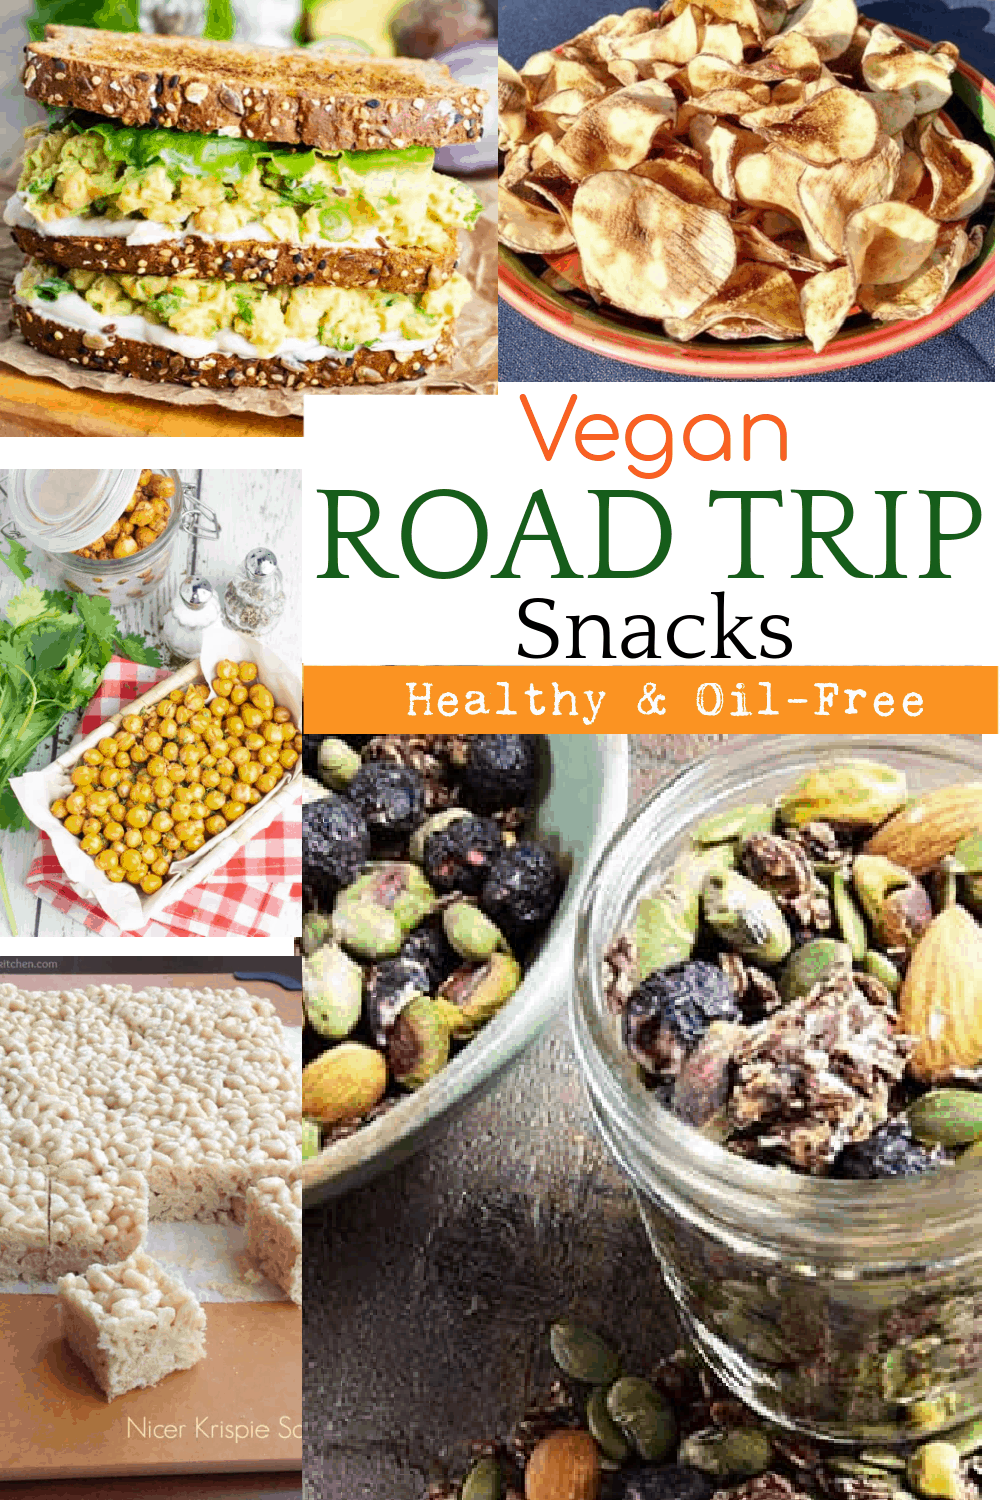 road trip snacks ideas vegetarian